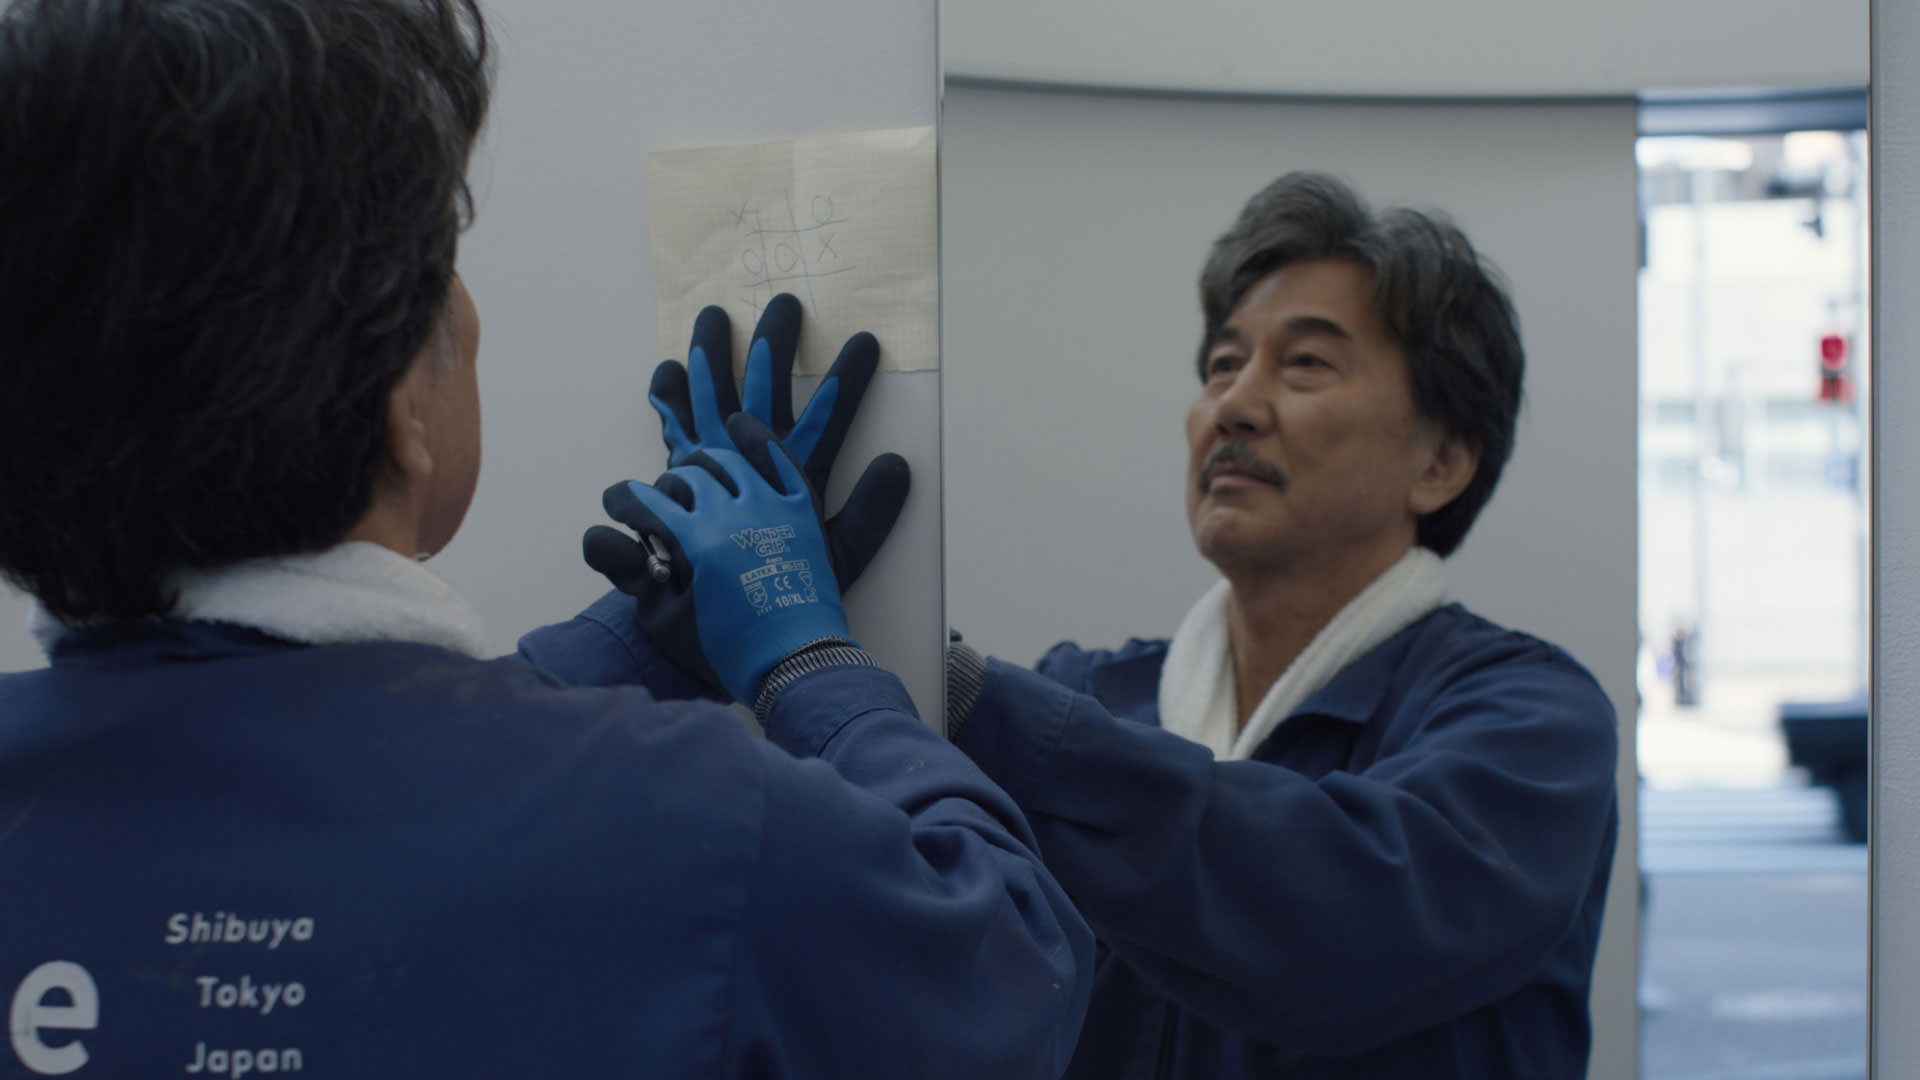 کوجی یاکوشو با لباس فرم آبی در حال تمیز کردن آینه‌ی یک سرویس بهداشتی عمومی در نمایی از فیلم روزهای عالی به کارگردانی ویم وندرس